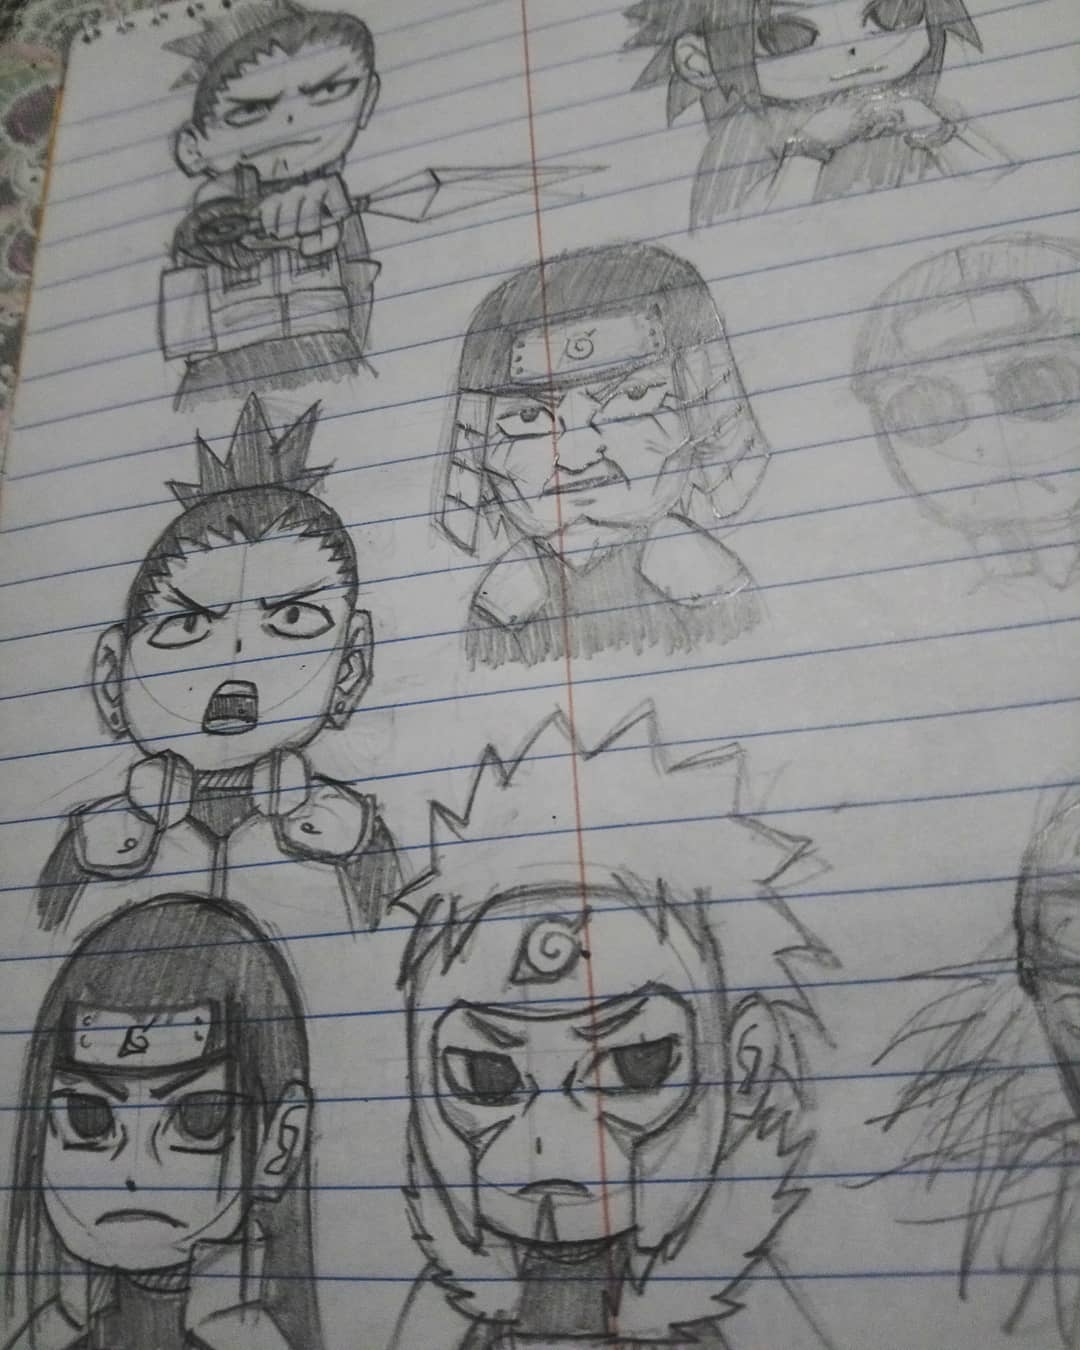 chibi naruto characters drawing